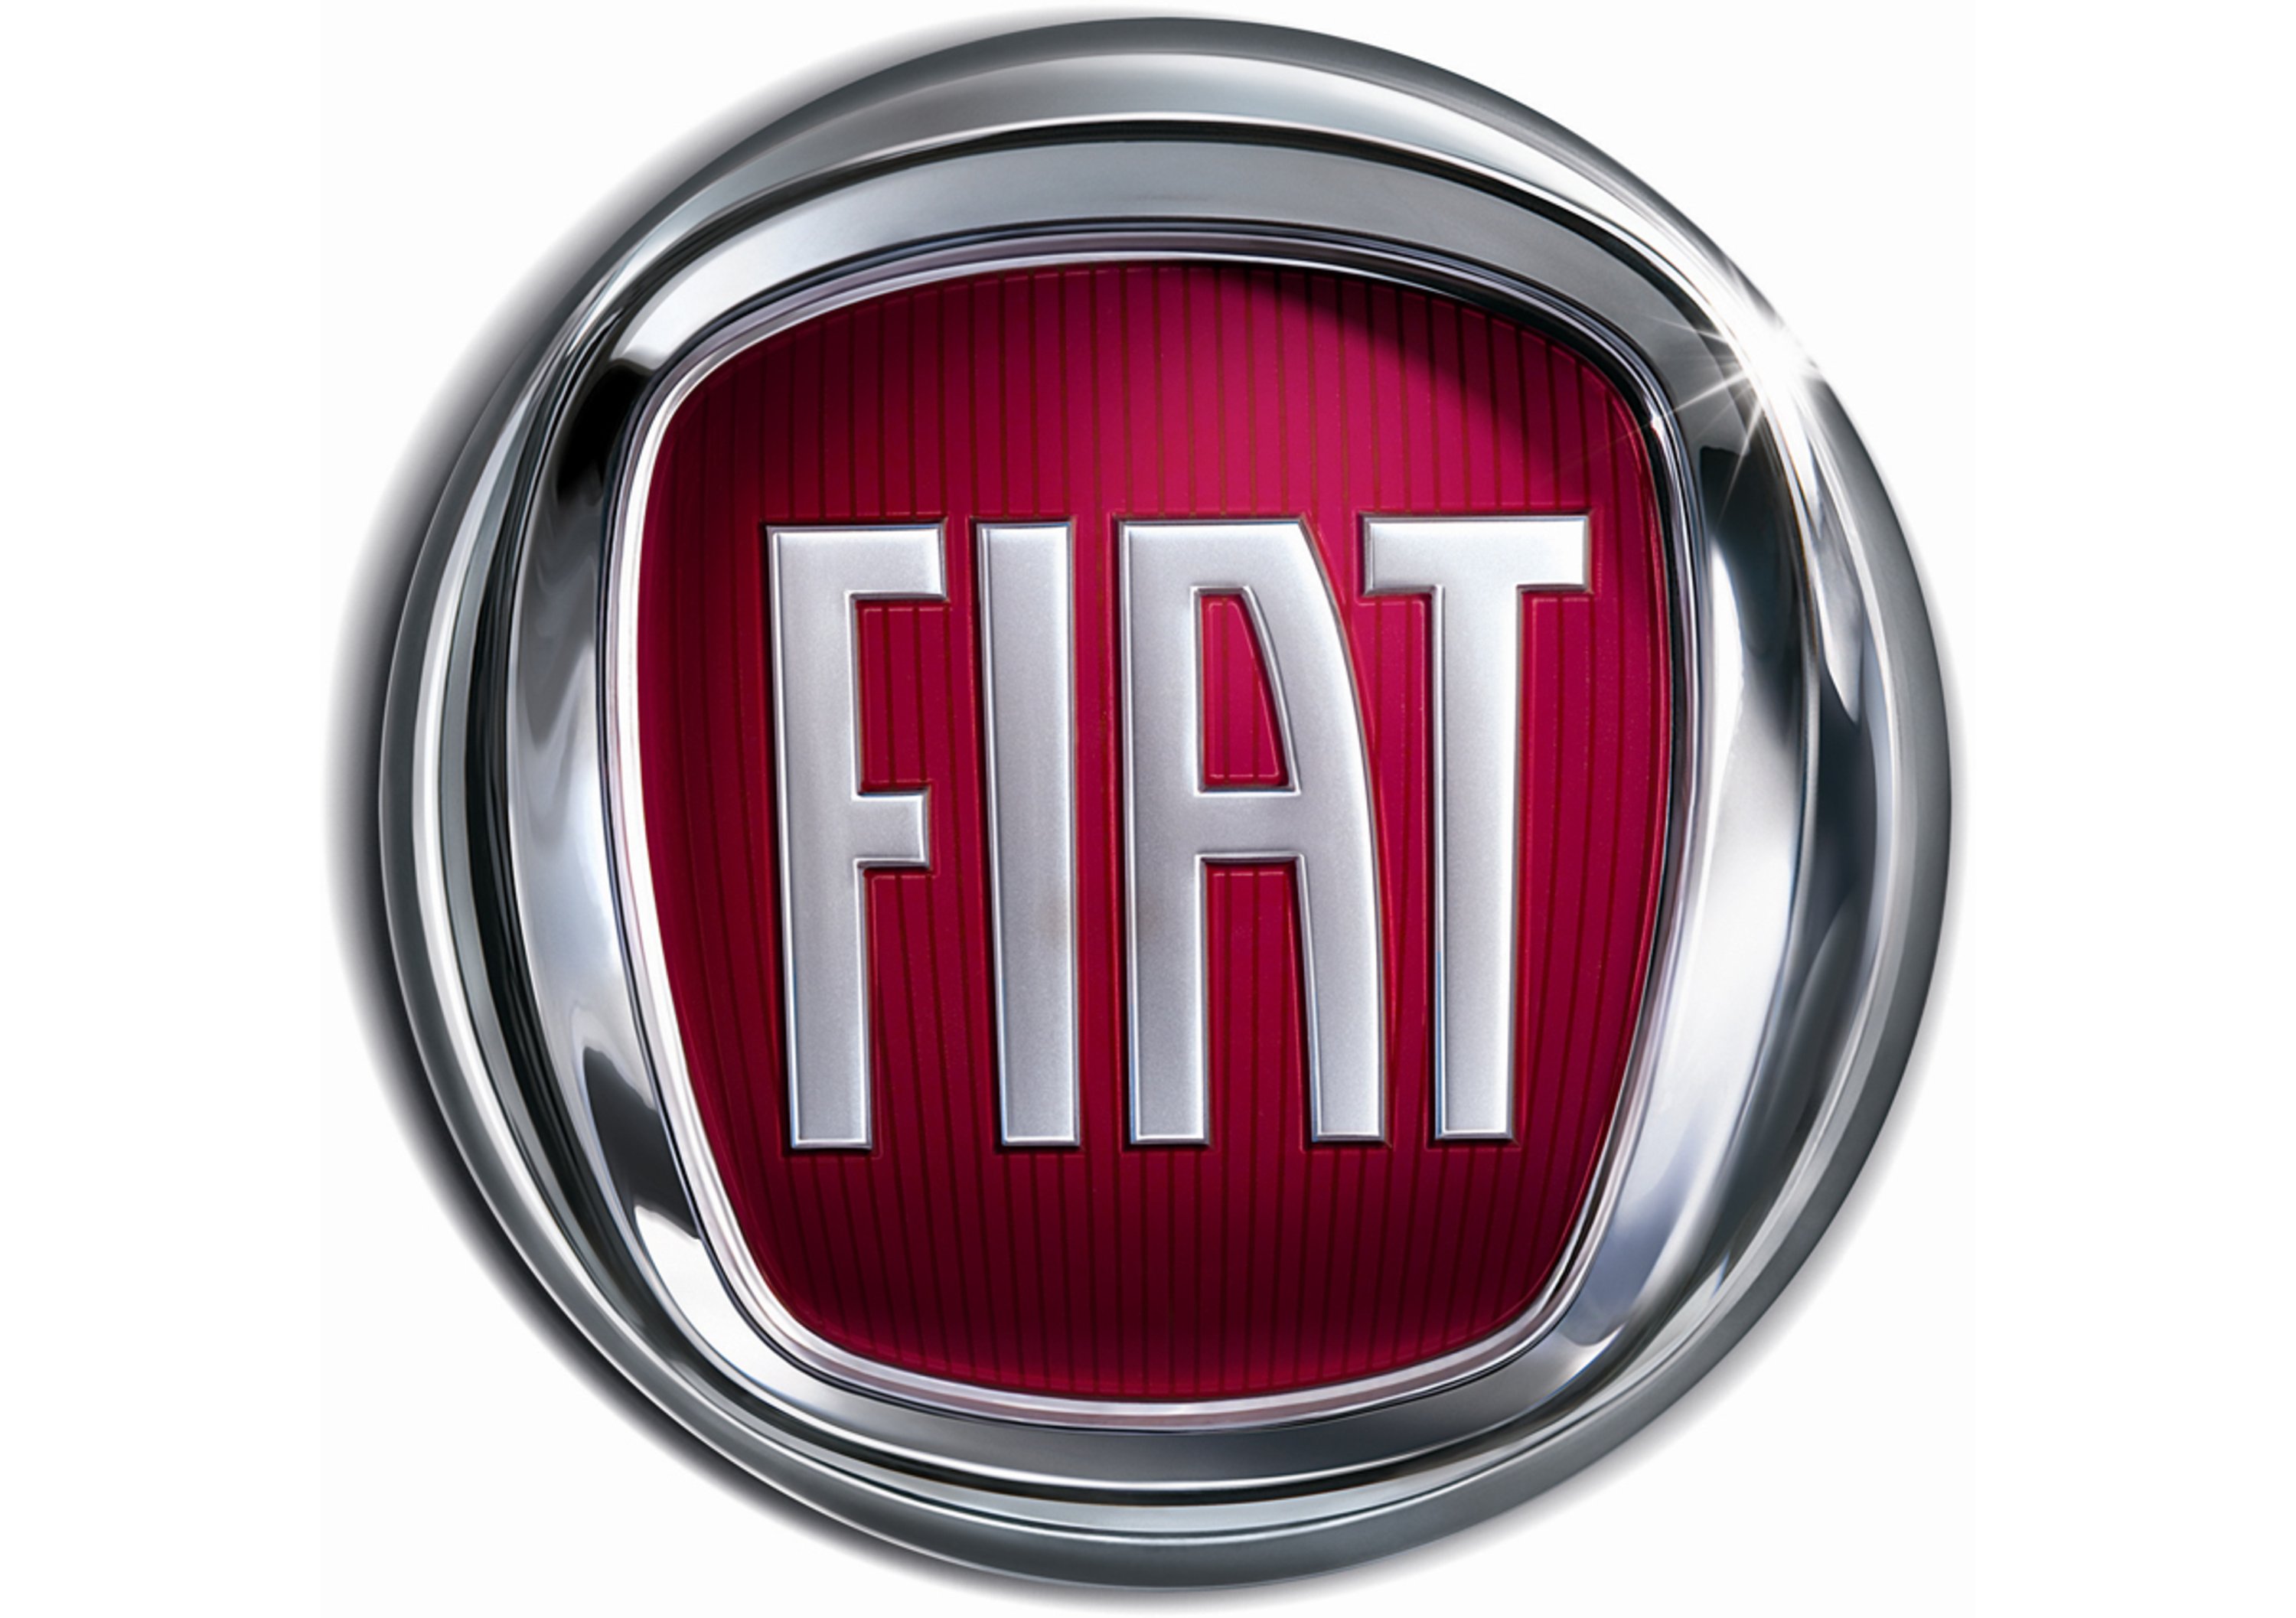 Fiat: immatricolazioni in calo ad aprile. In crescita la quota del Gruppo